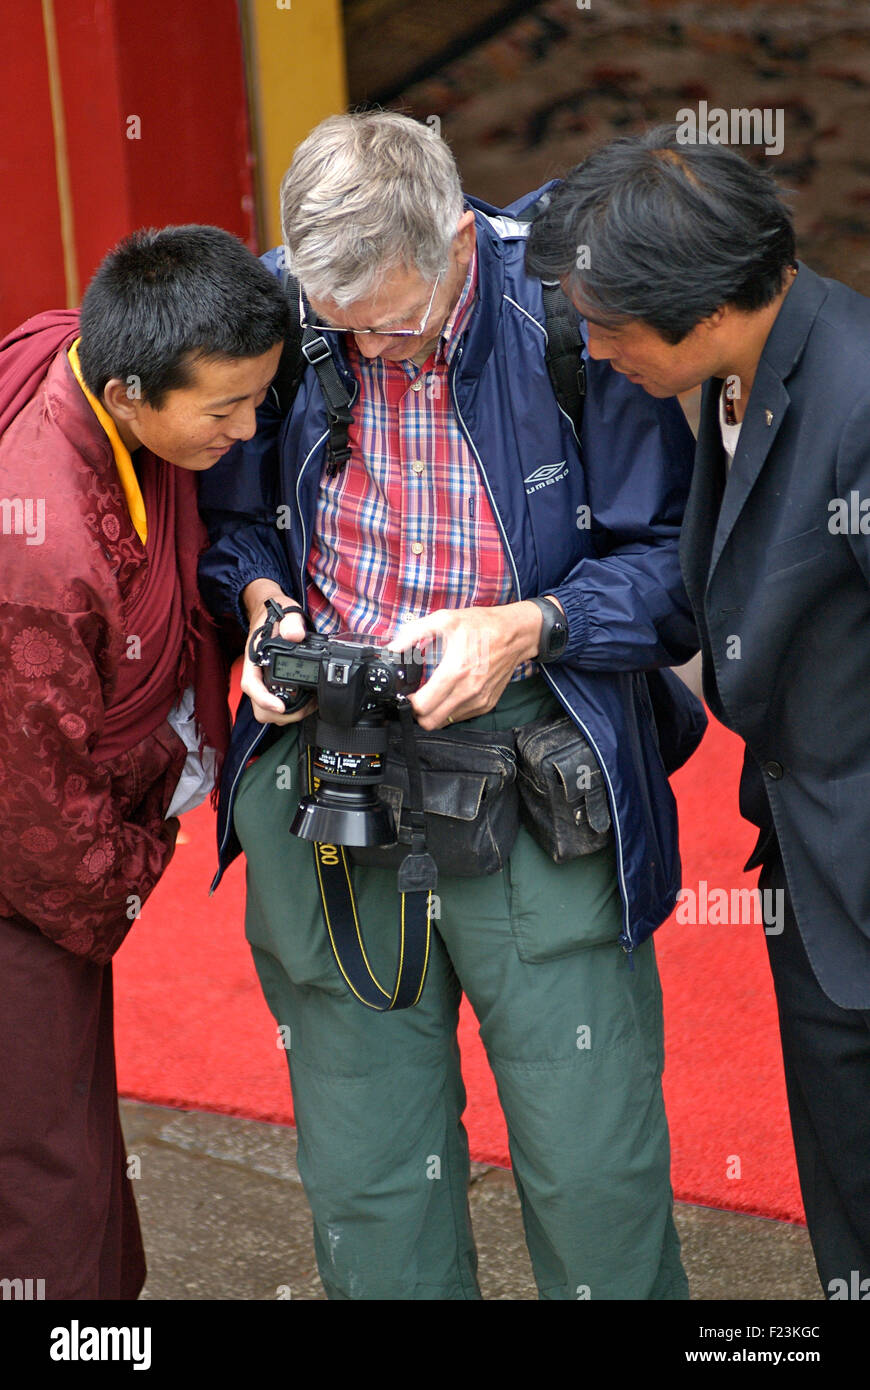 Westliche Touristen Fotografen tibetische einheimische seine Fotos teilhaben. Lhasa, Tibet. Nur Modell europäisches Thema veröffentlicht Stockfoto